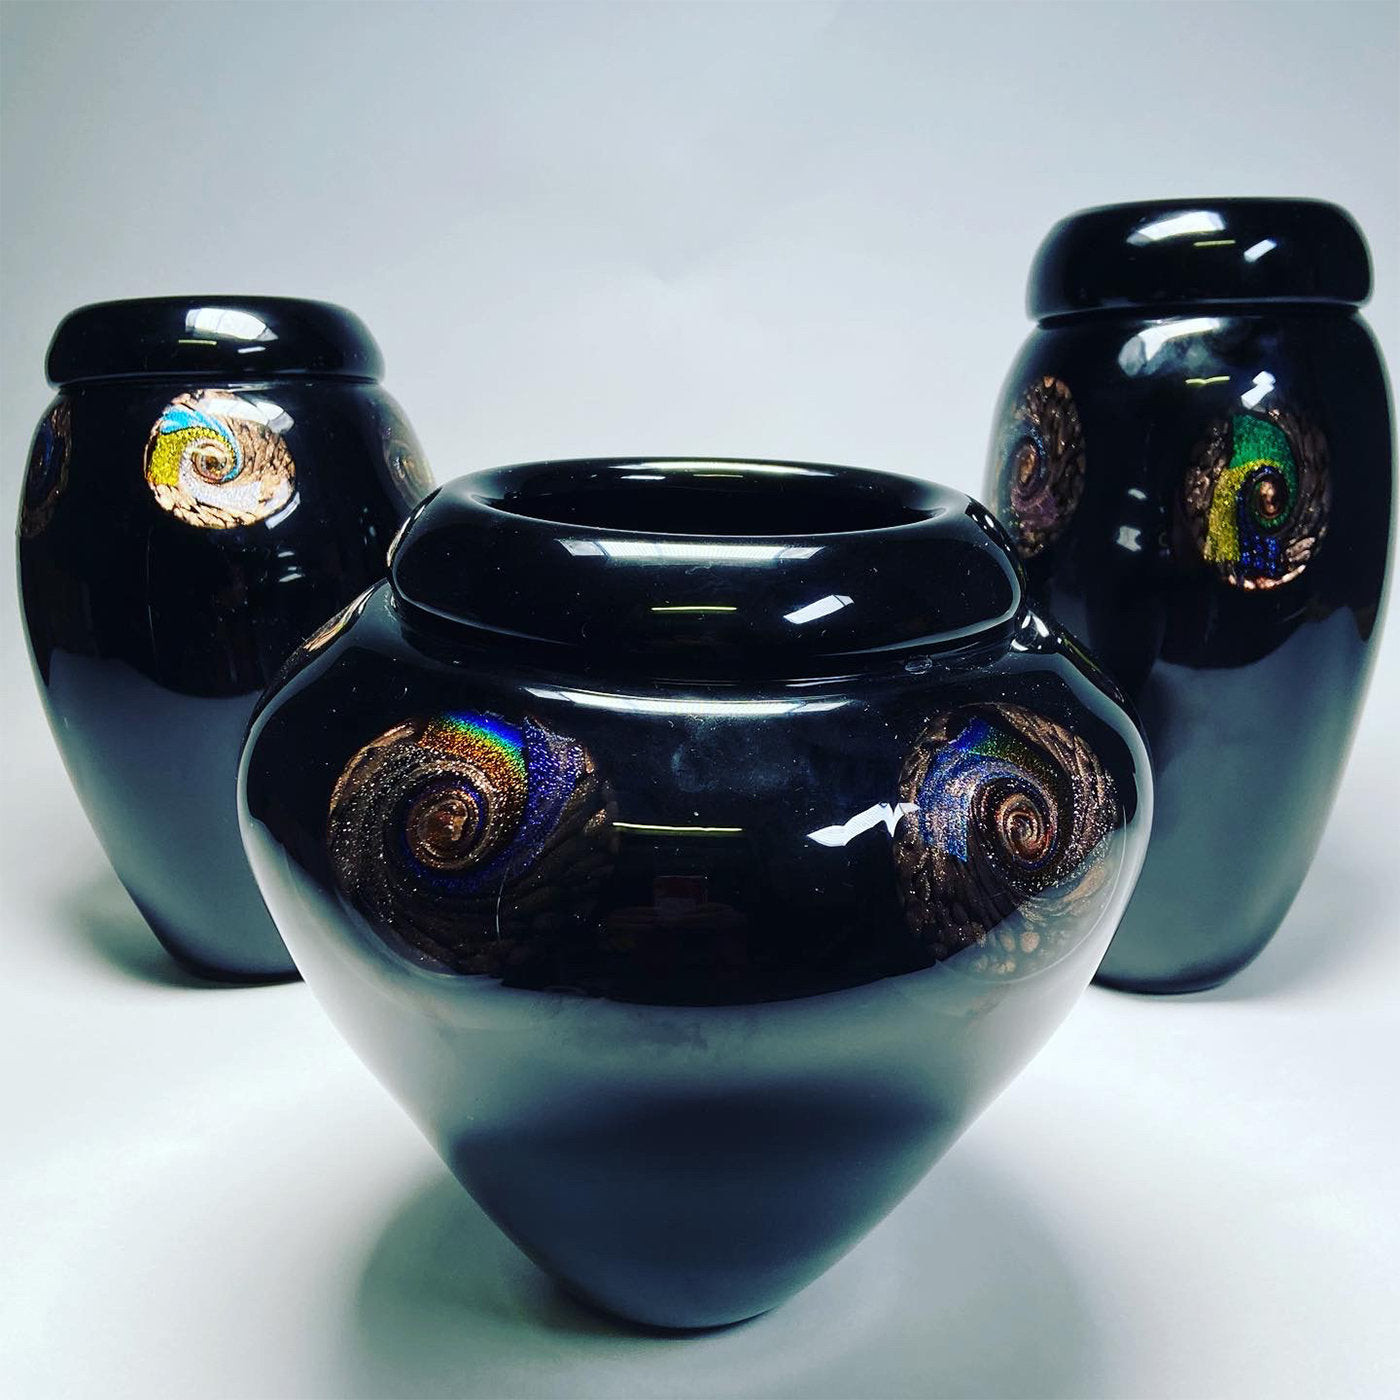 Risvolto Small Black Vase  - Alternative view 1